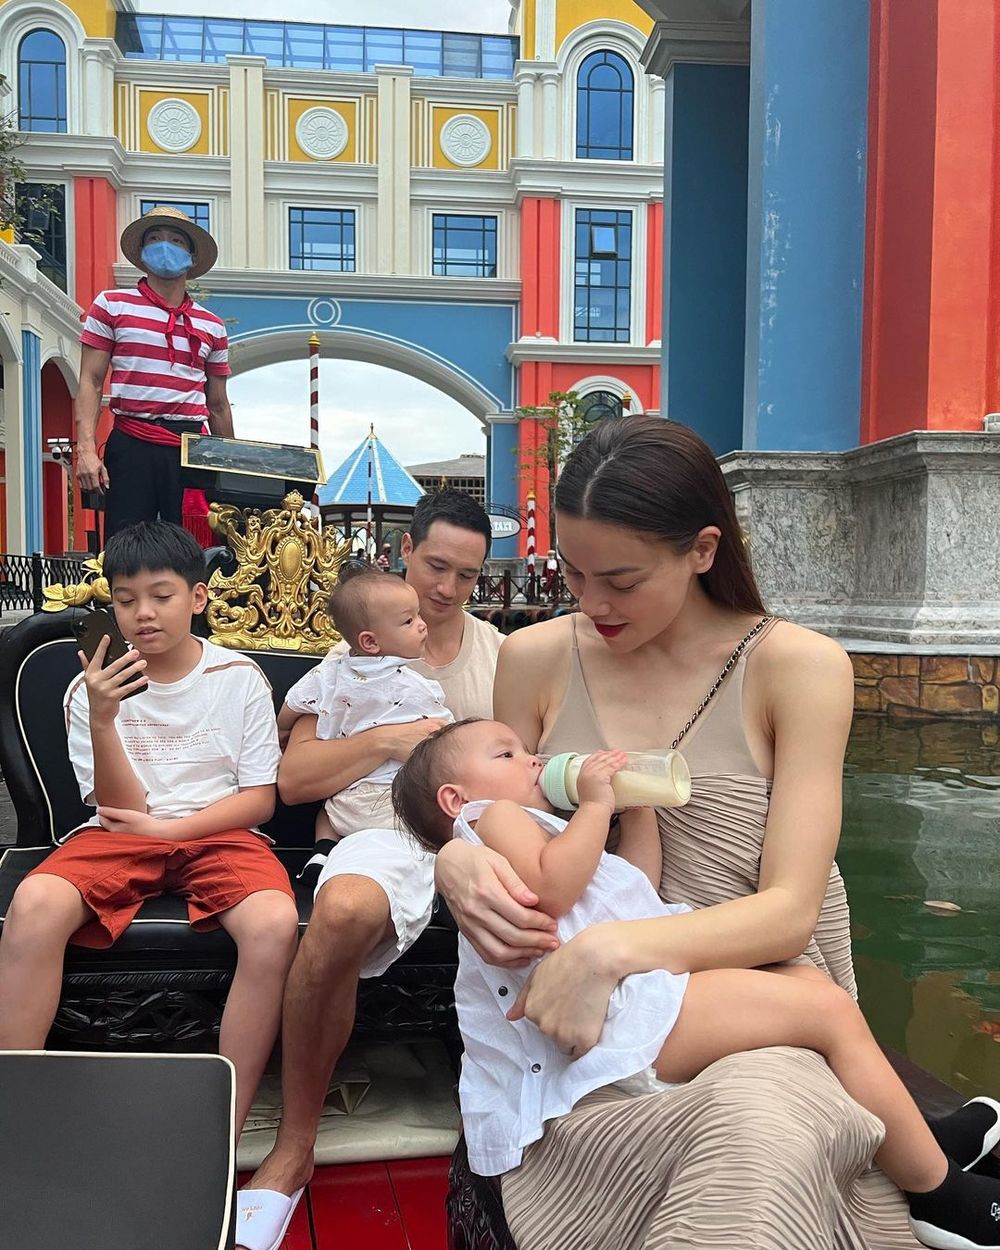  
Khoảnh khắc hạnh phúc của Hồ Ngọc Hà bên chồng và 3 con. (Ảnh: Instagram hongocha)